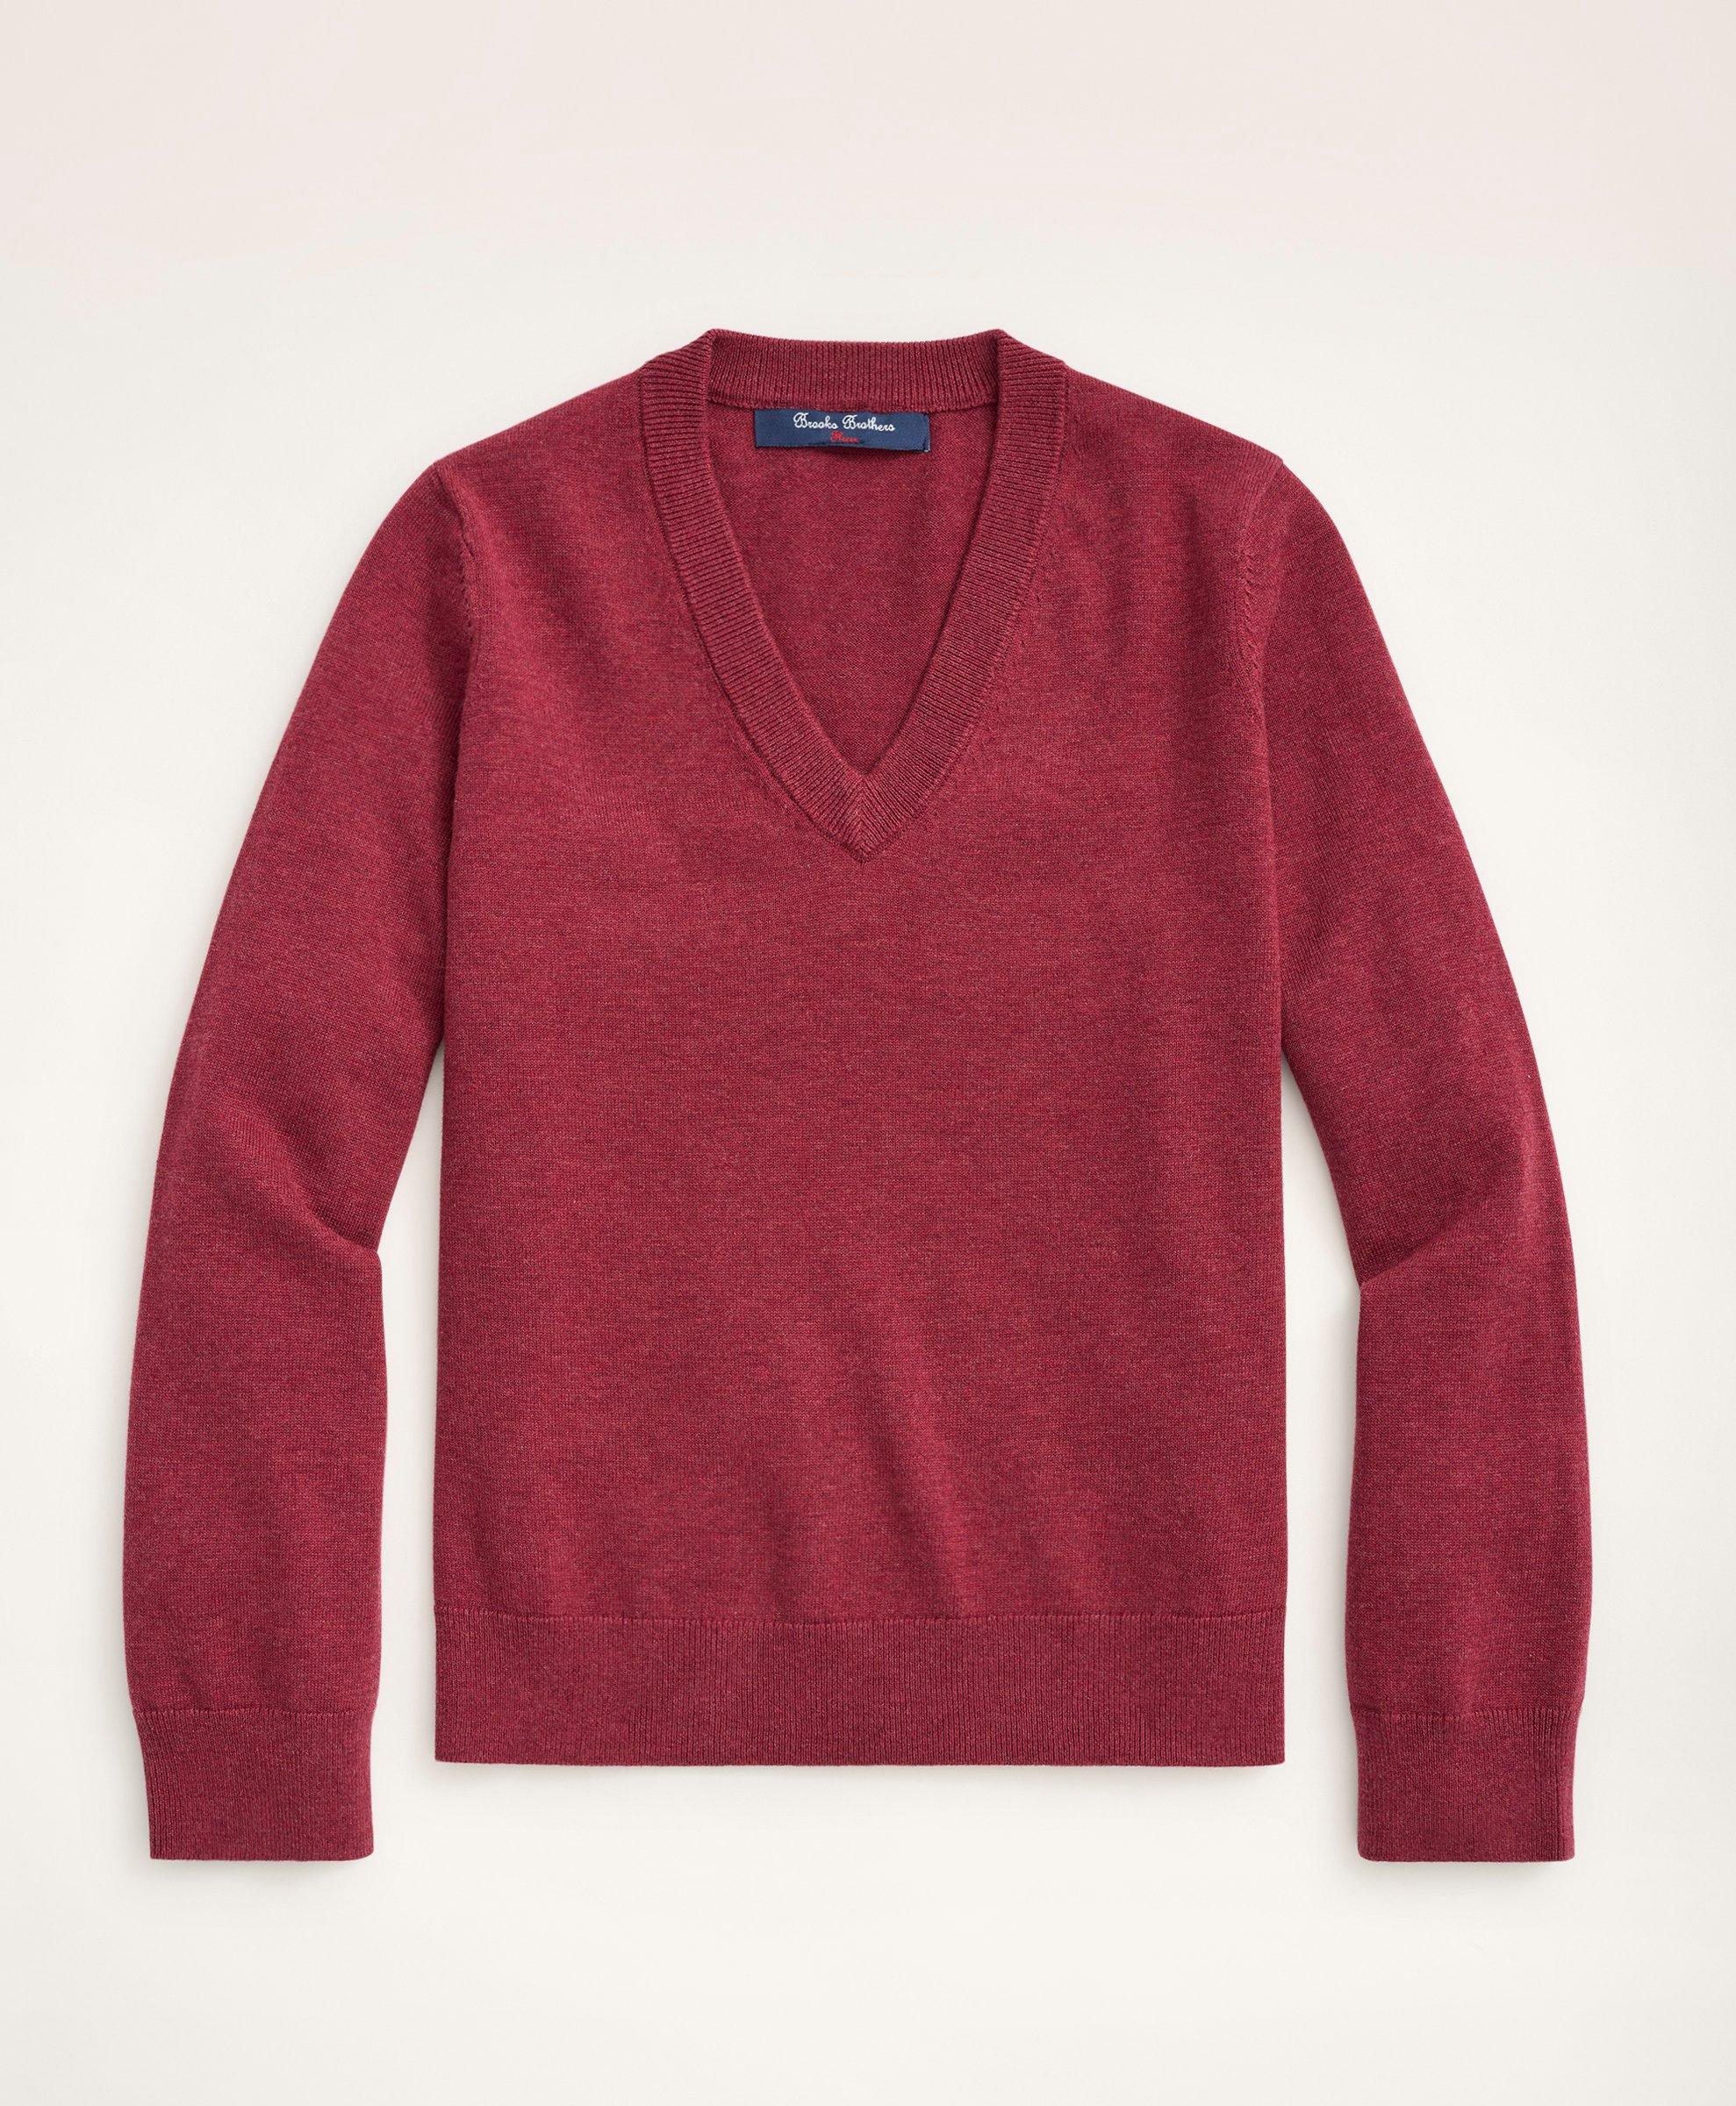 Brooks Brothers Kids'  Boys Cotton V-neck Sweater | Burgundy | Size Xs